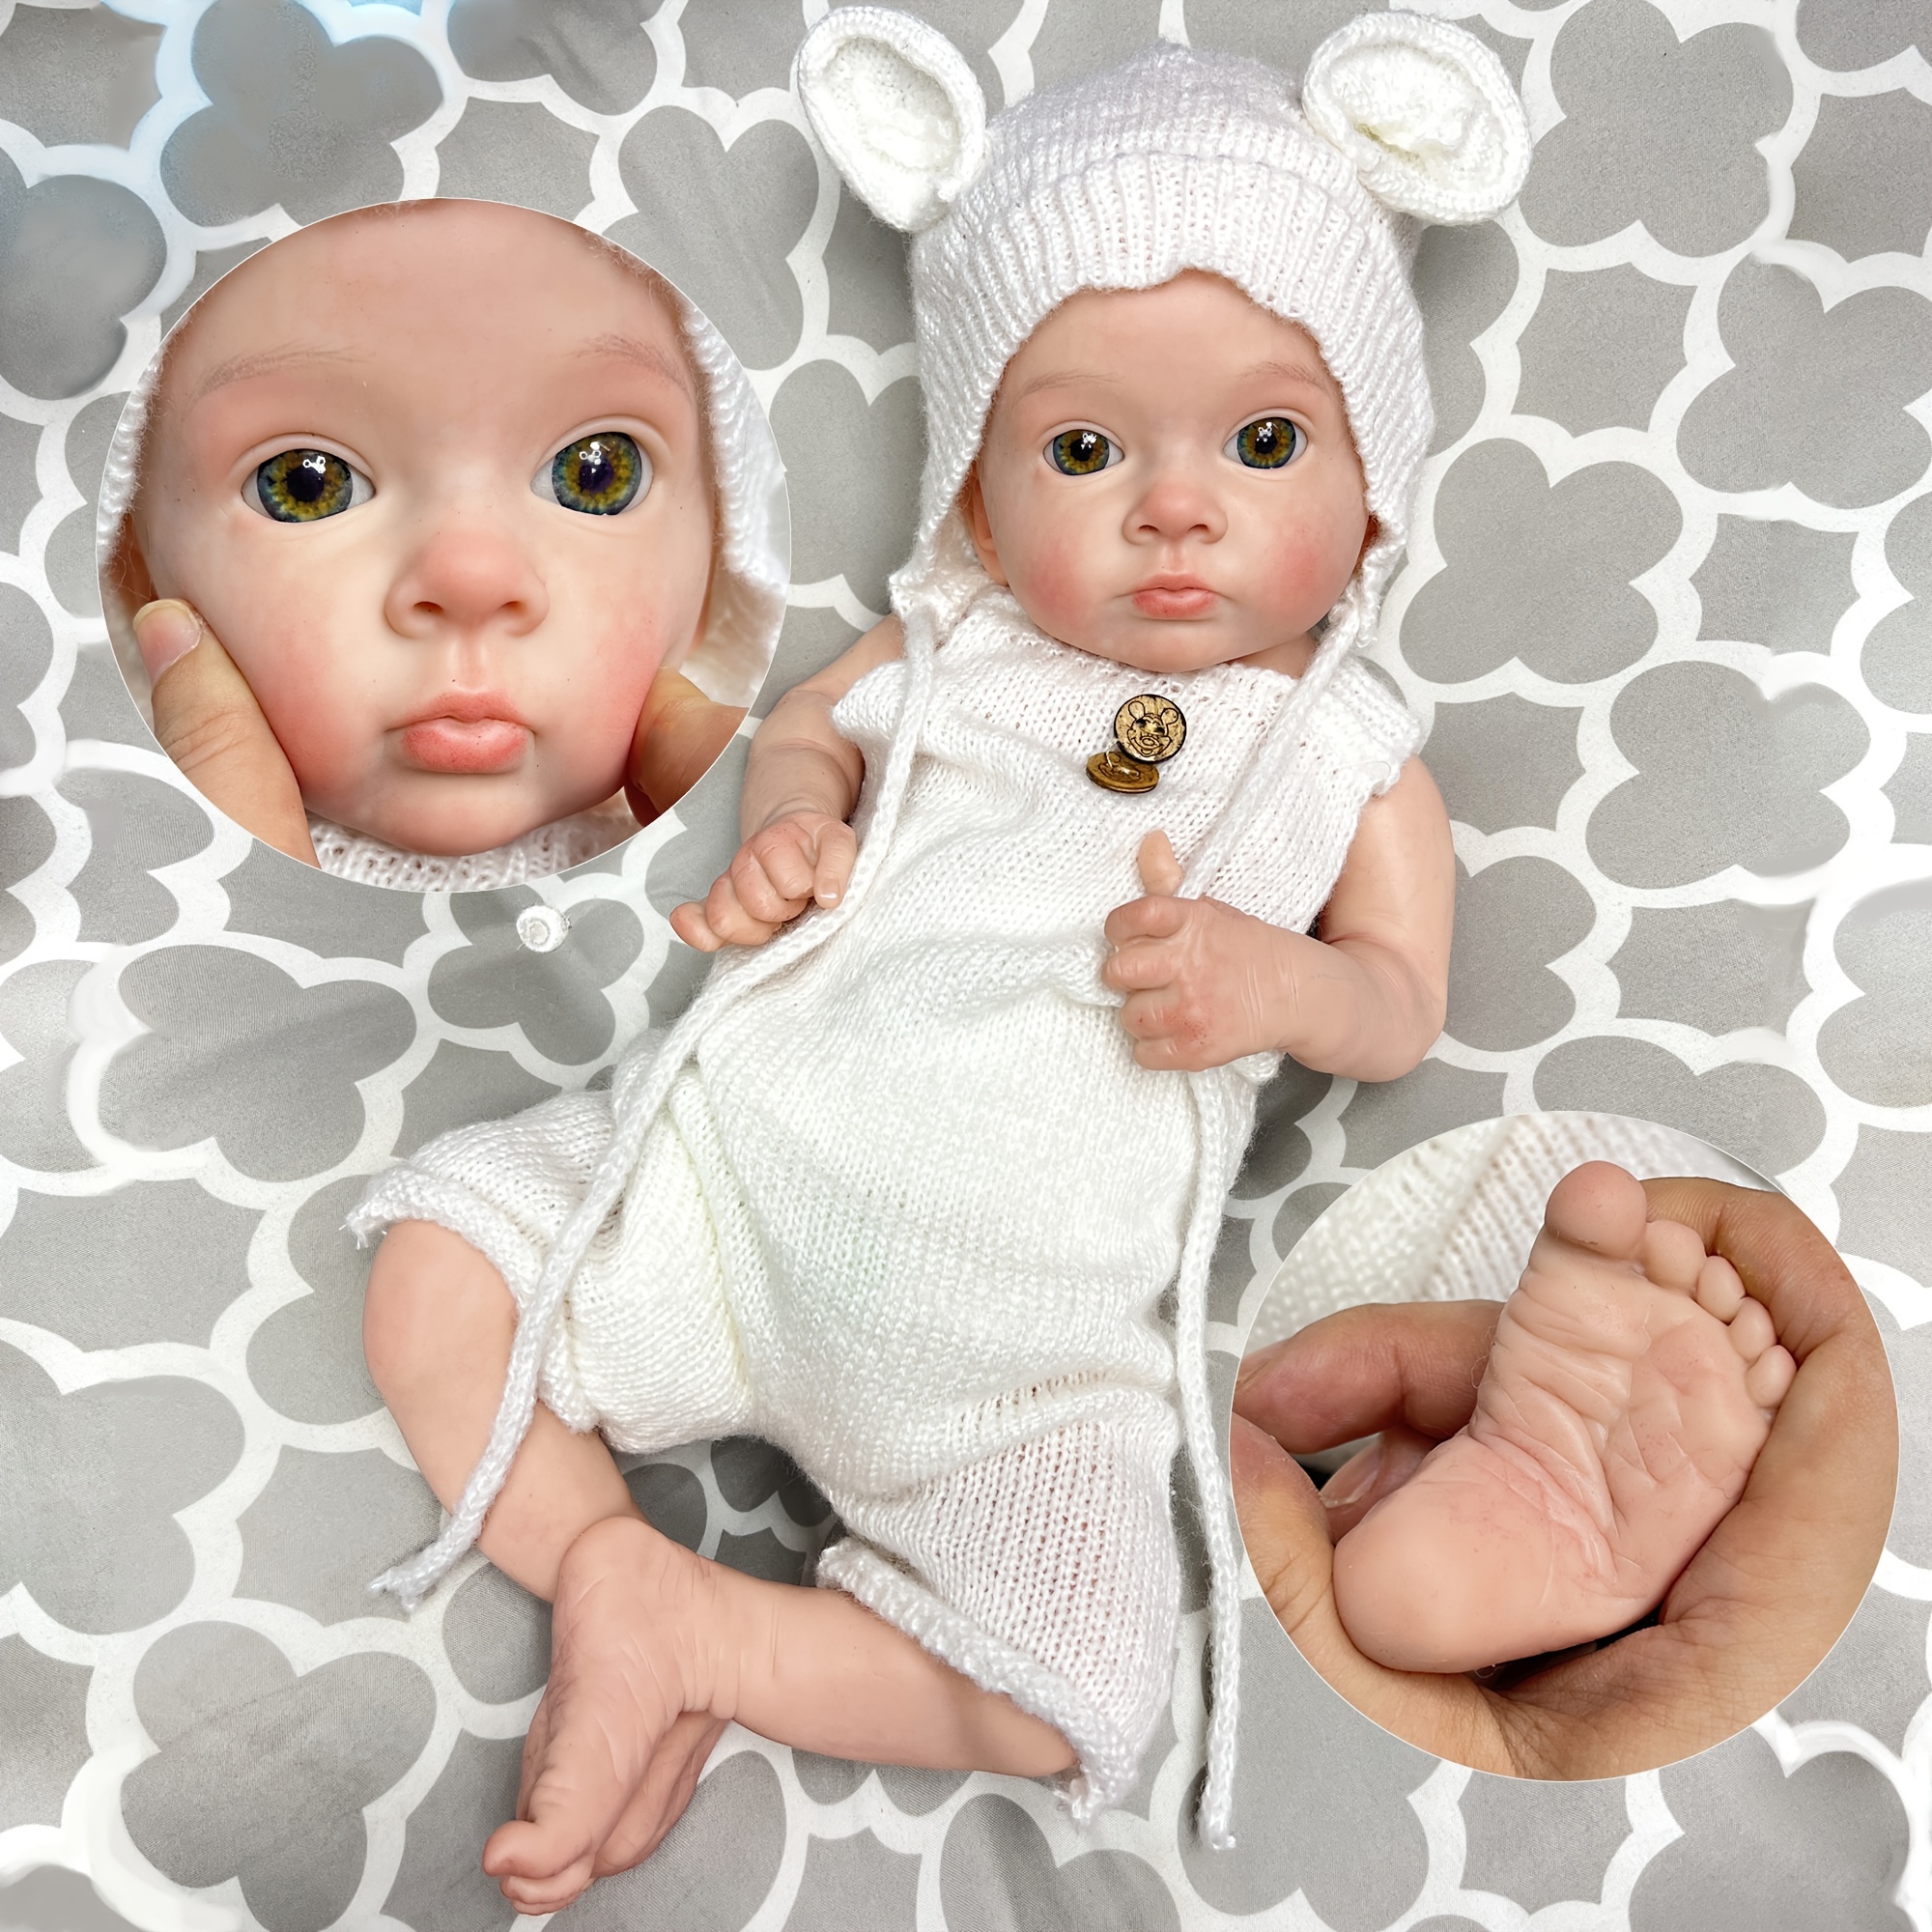  Muñecas realistas de bebé Reborn de 18 pulgadas